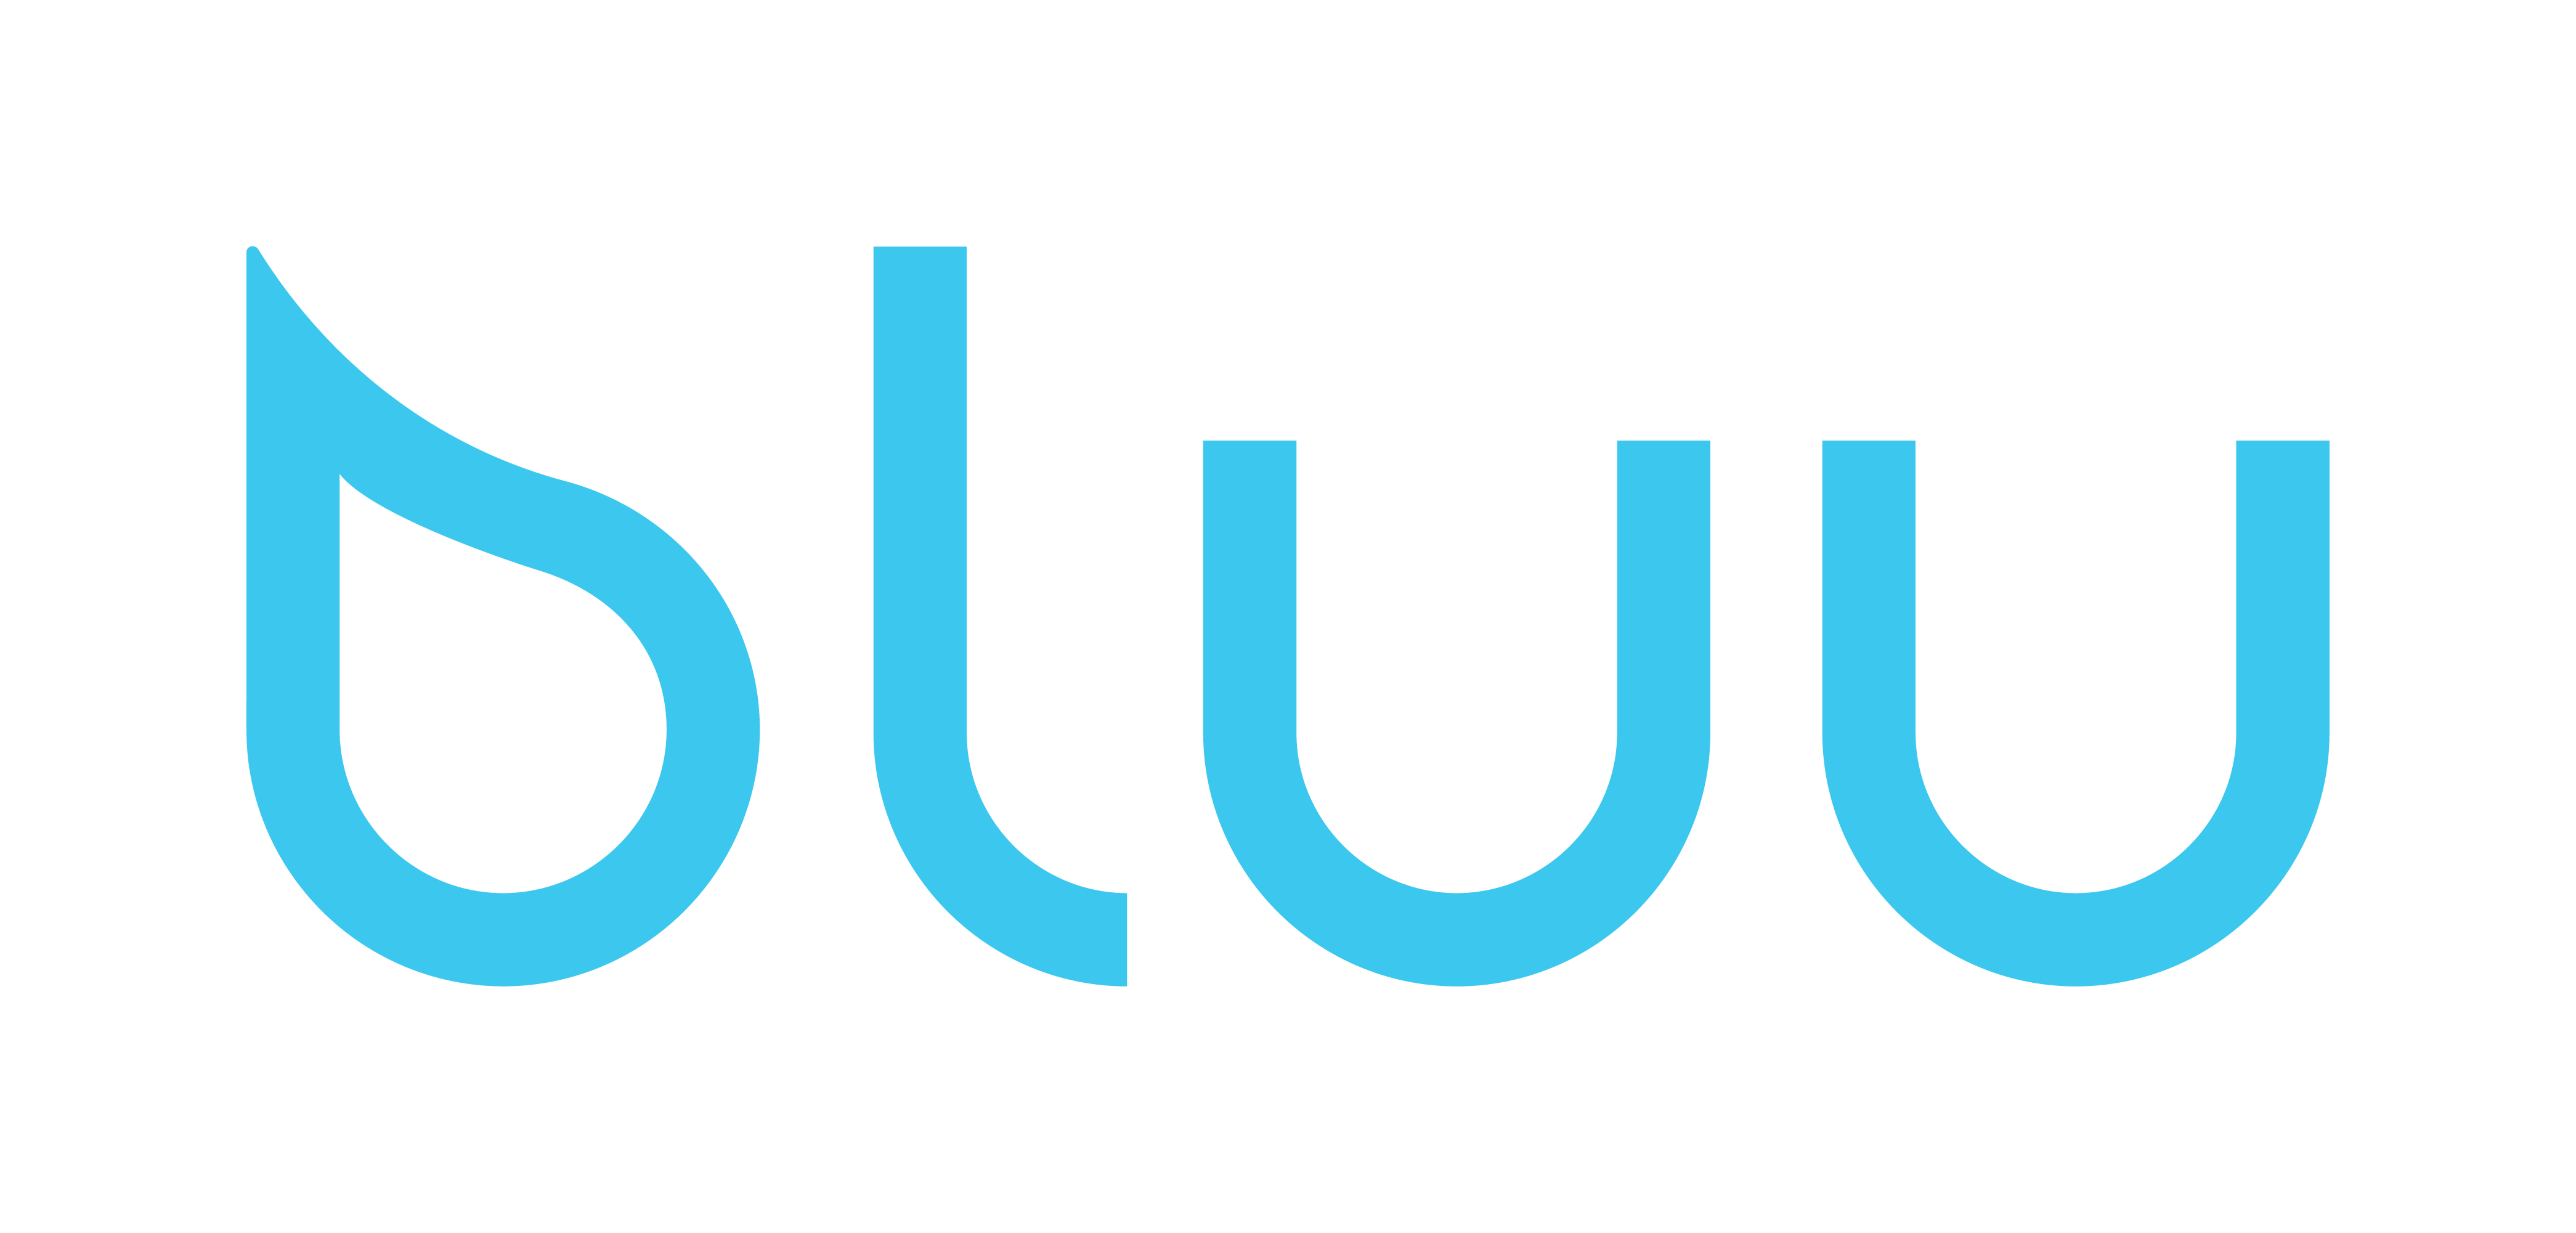 bluu - Die Waschsensation Rabattcodes